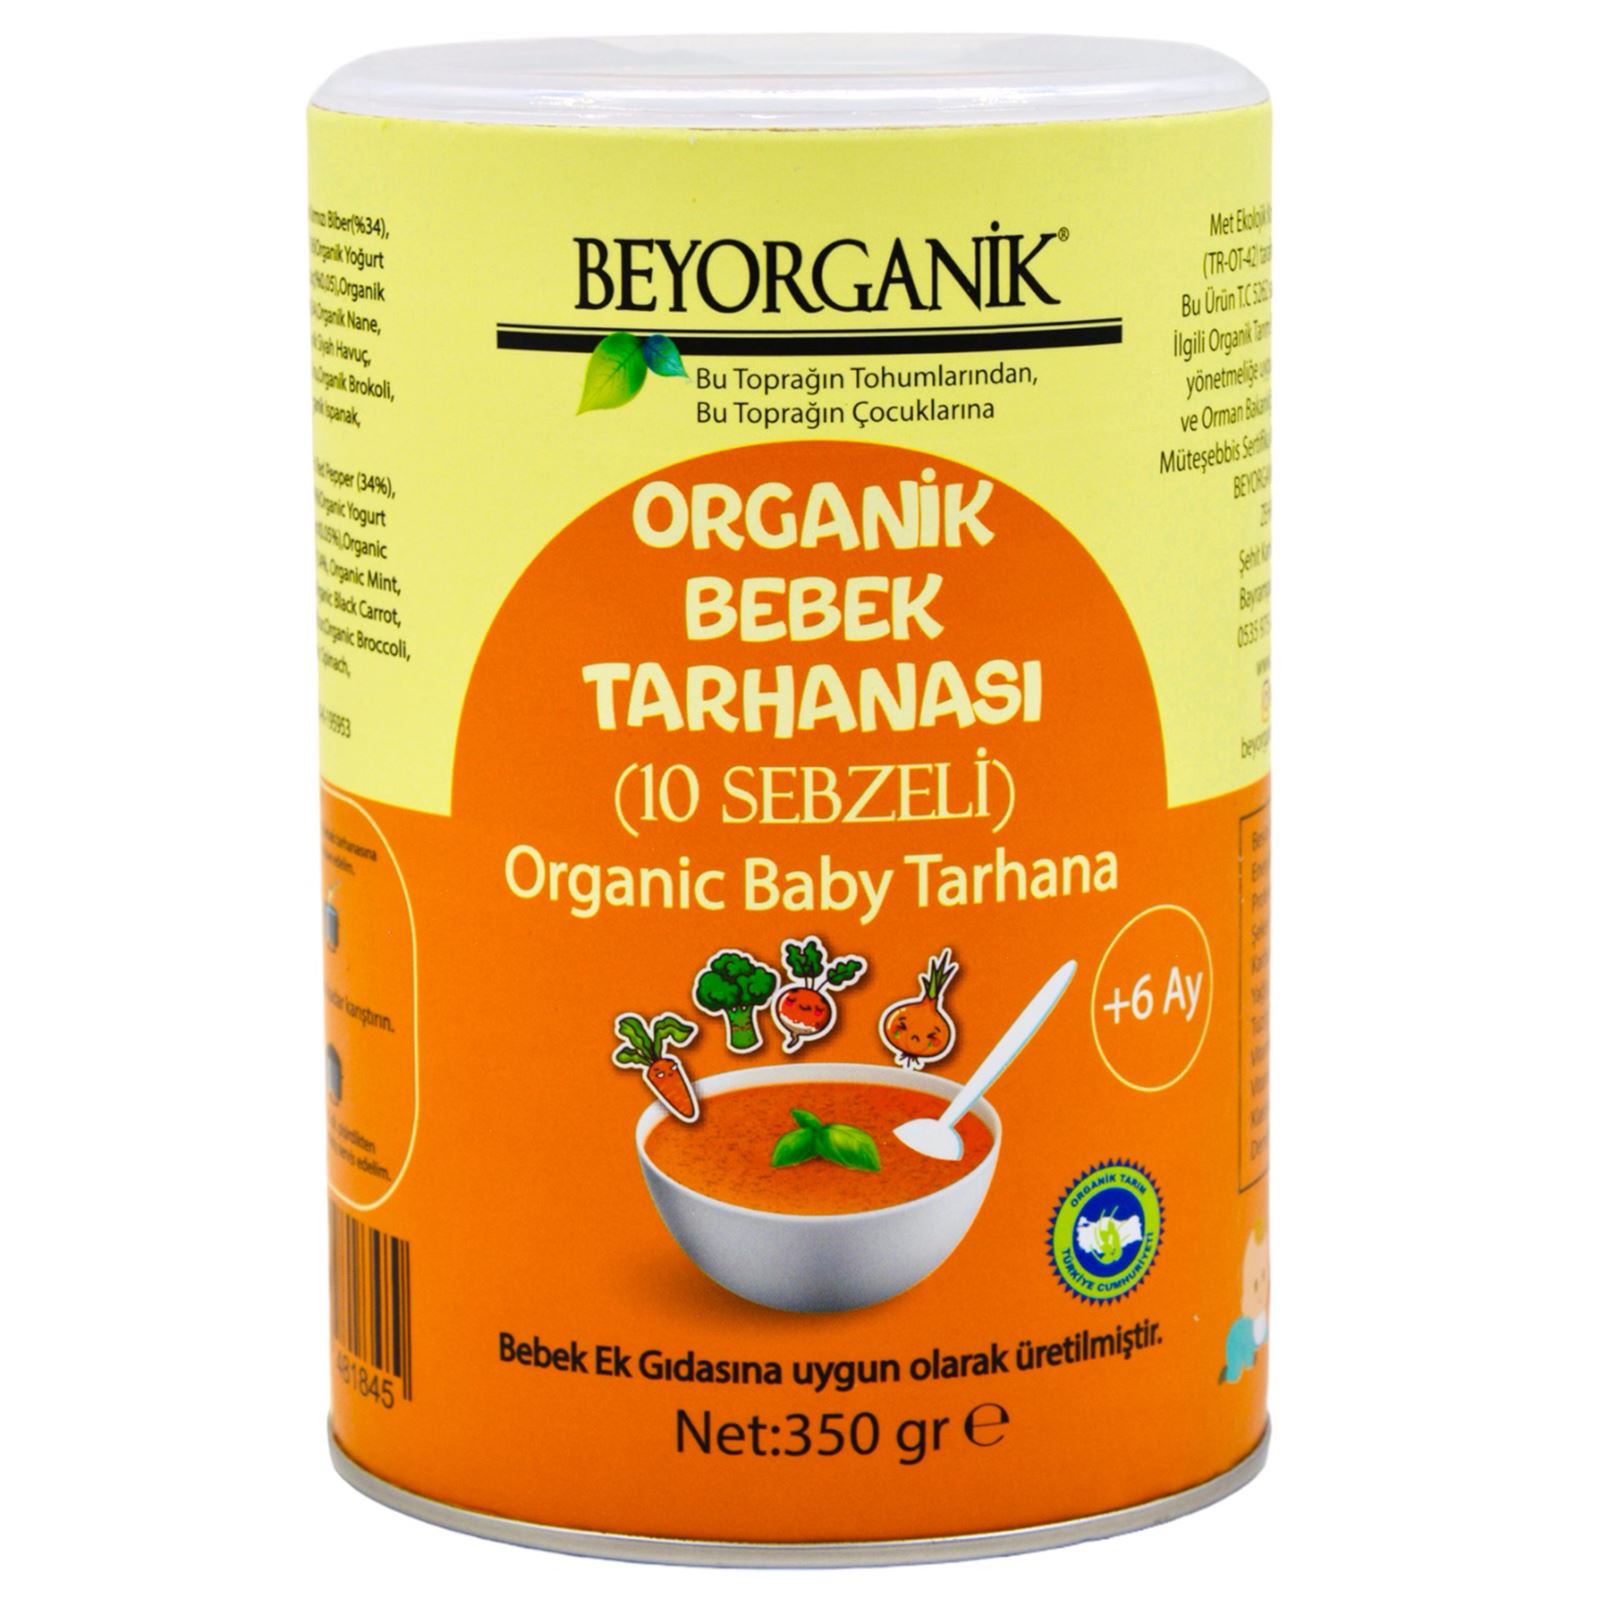 Beyorganik Organik Ek Gıda Bebek Tarhanası (10 Sebzeli) 350 gr